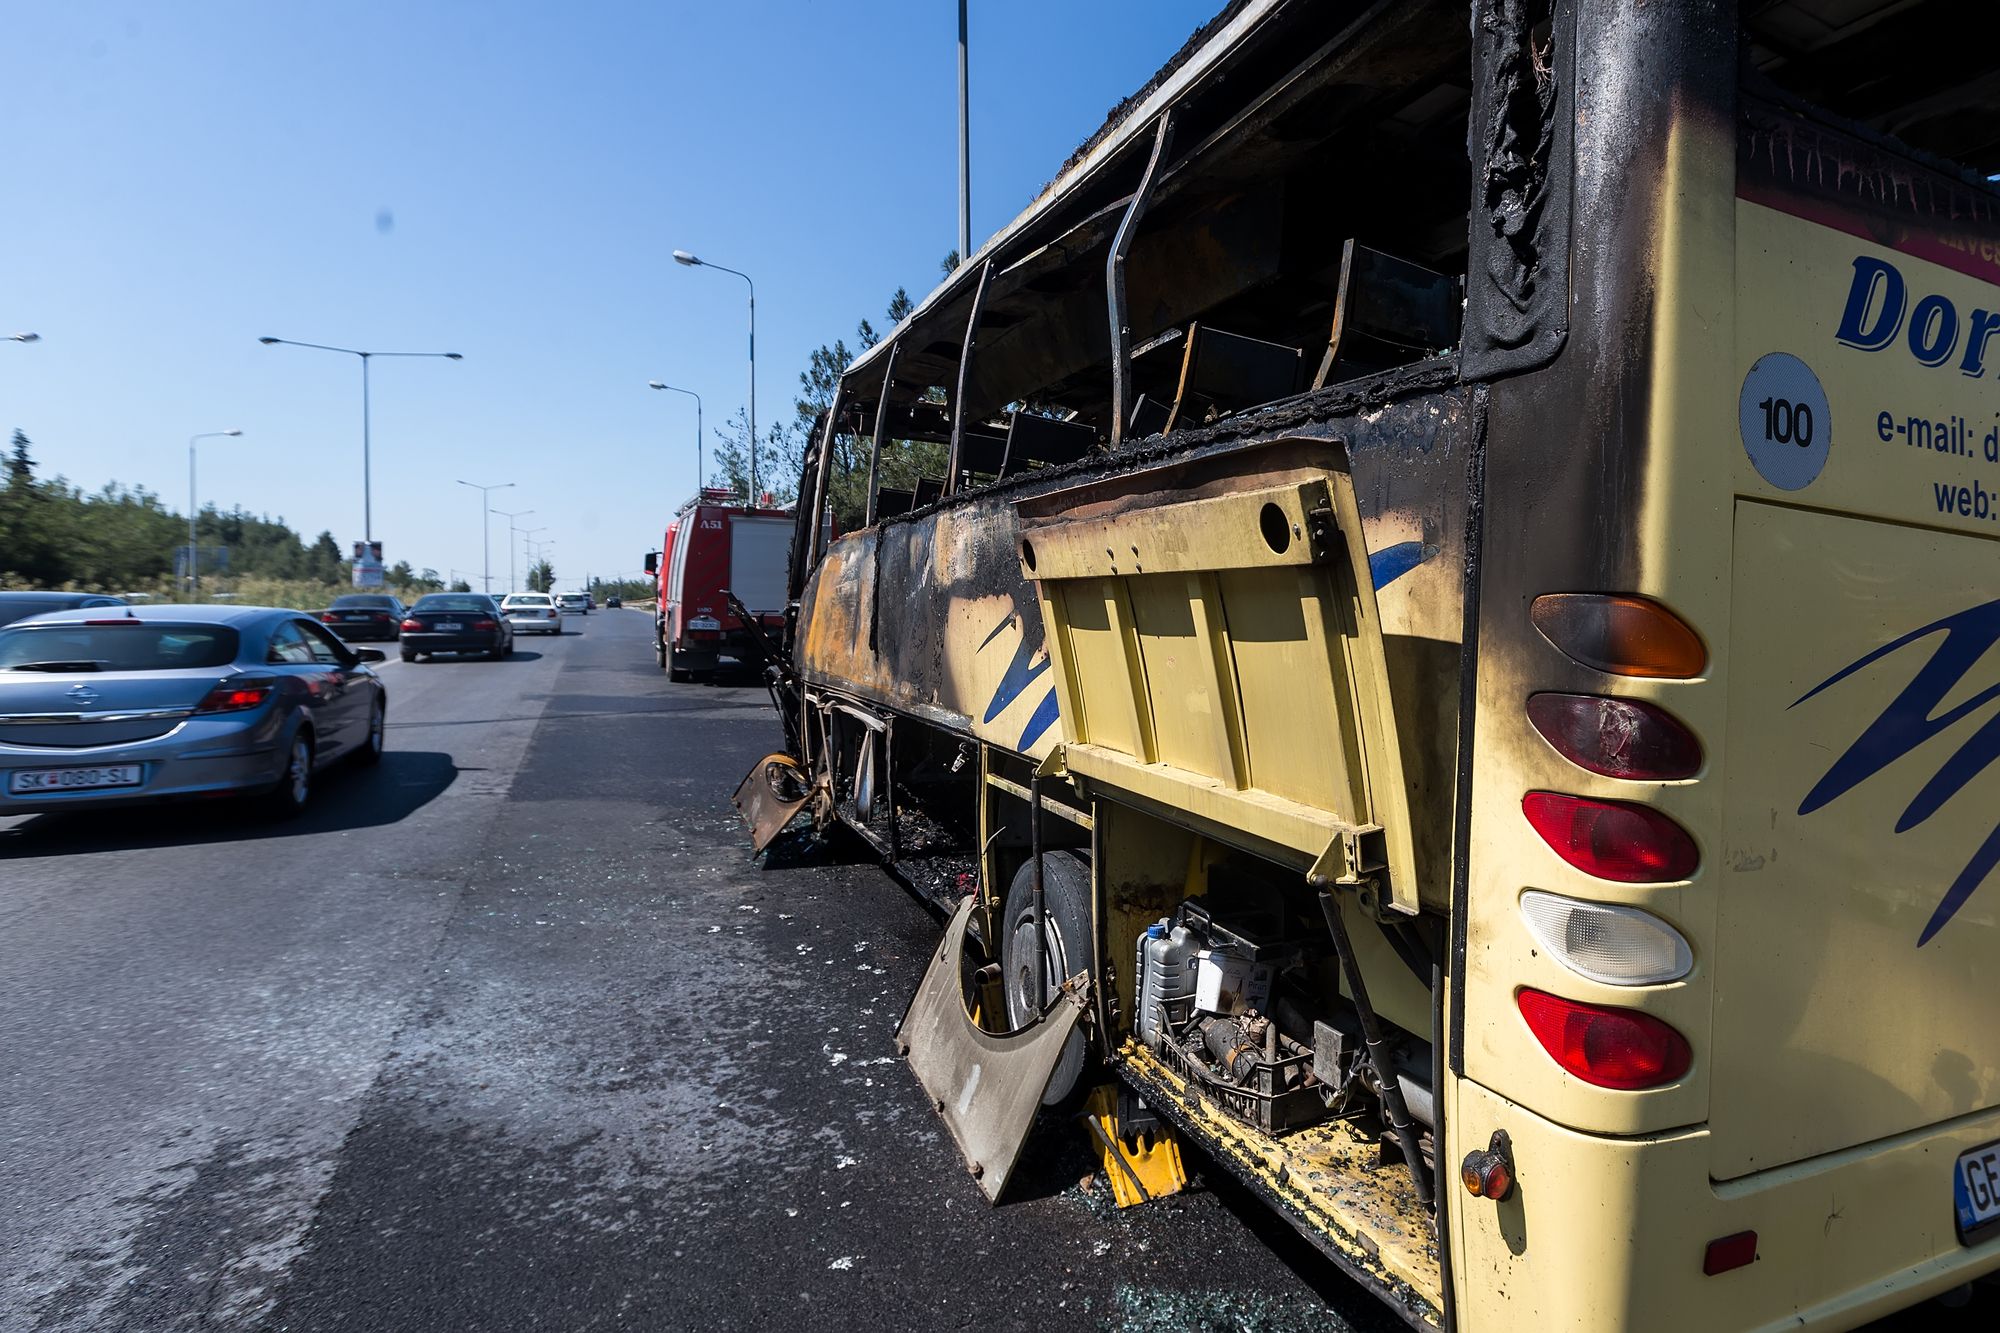 Schwerer Unfall zwischen Passagier-Bus und LKW – mindestens 19 Tote